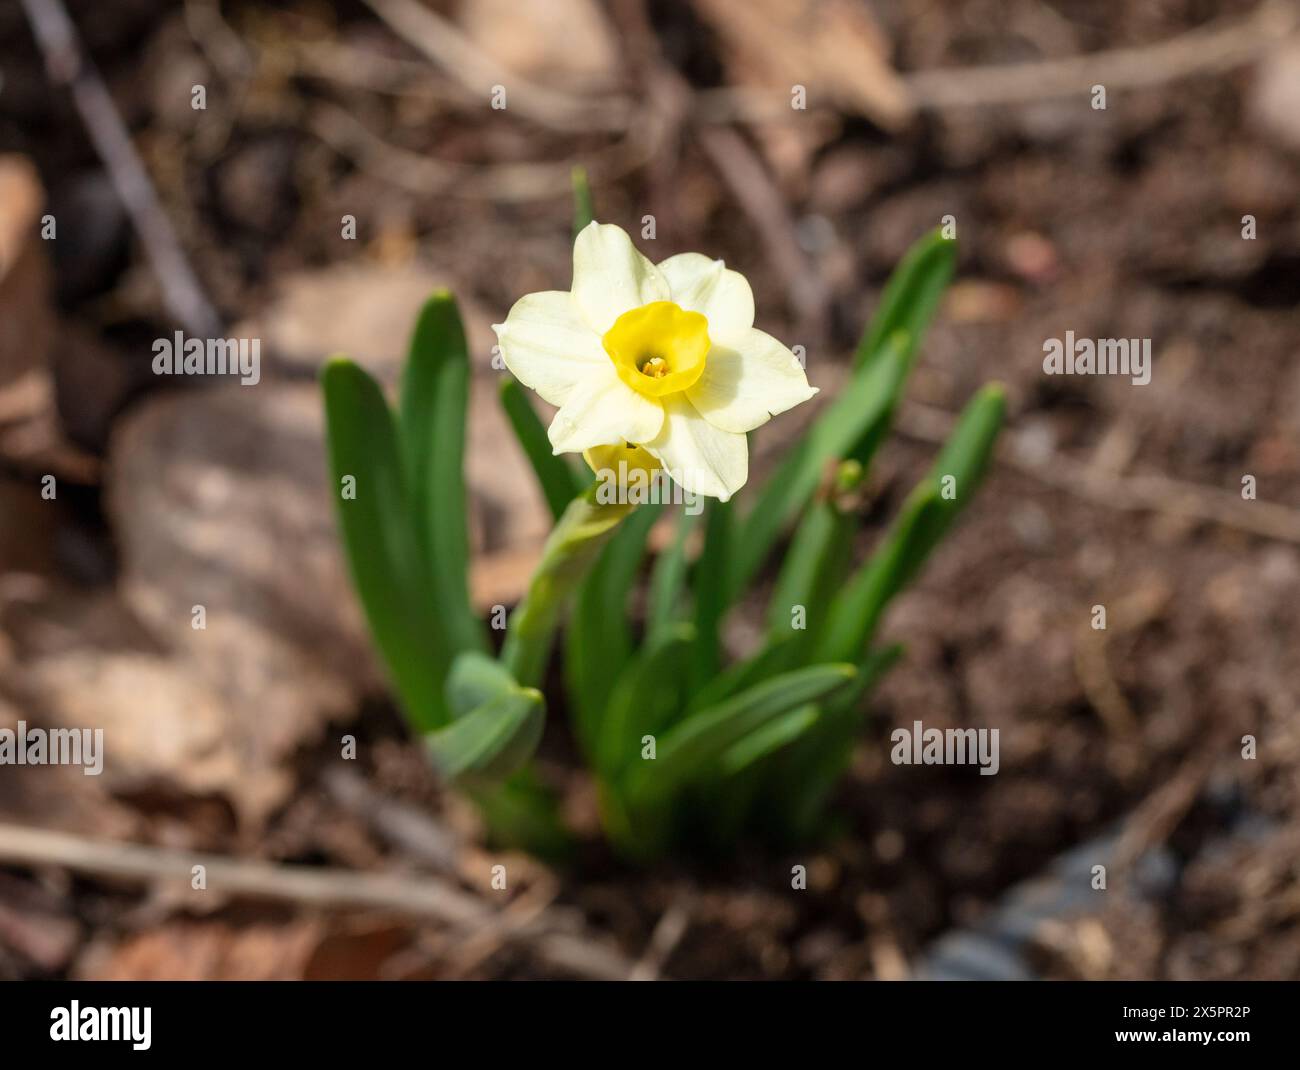 'Minnow' Daffodil, Påsklilja (Narcissus hybrid) Stock Photo